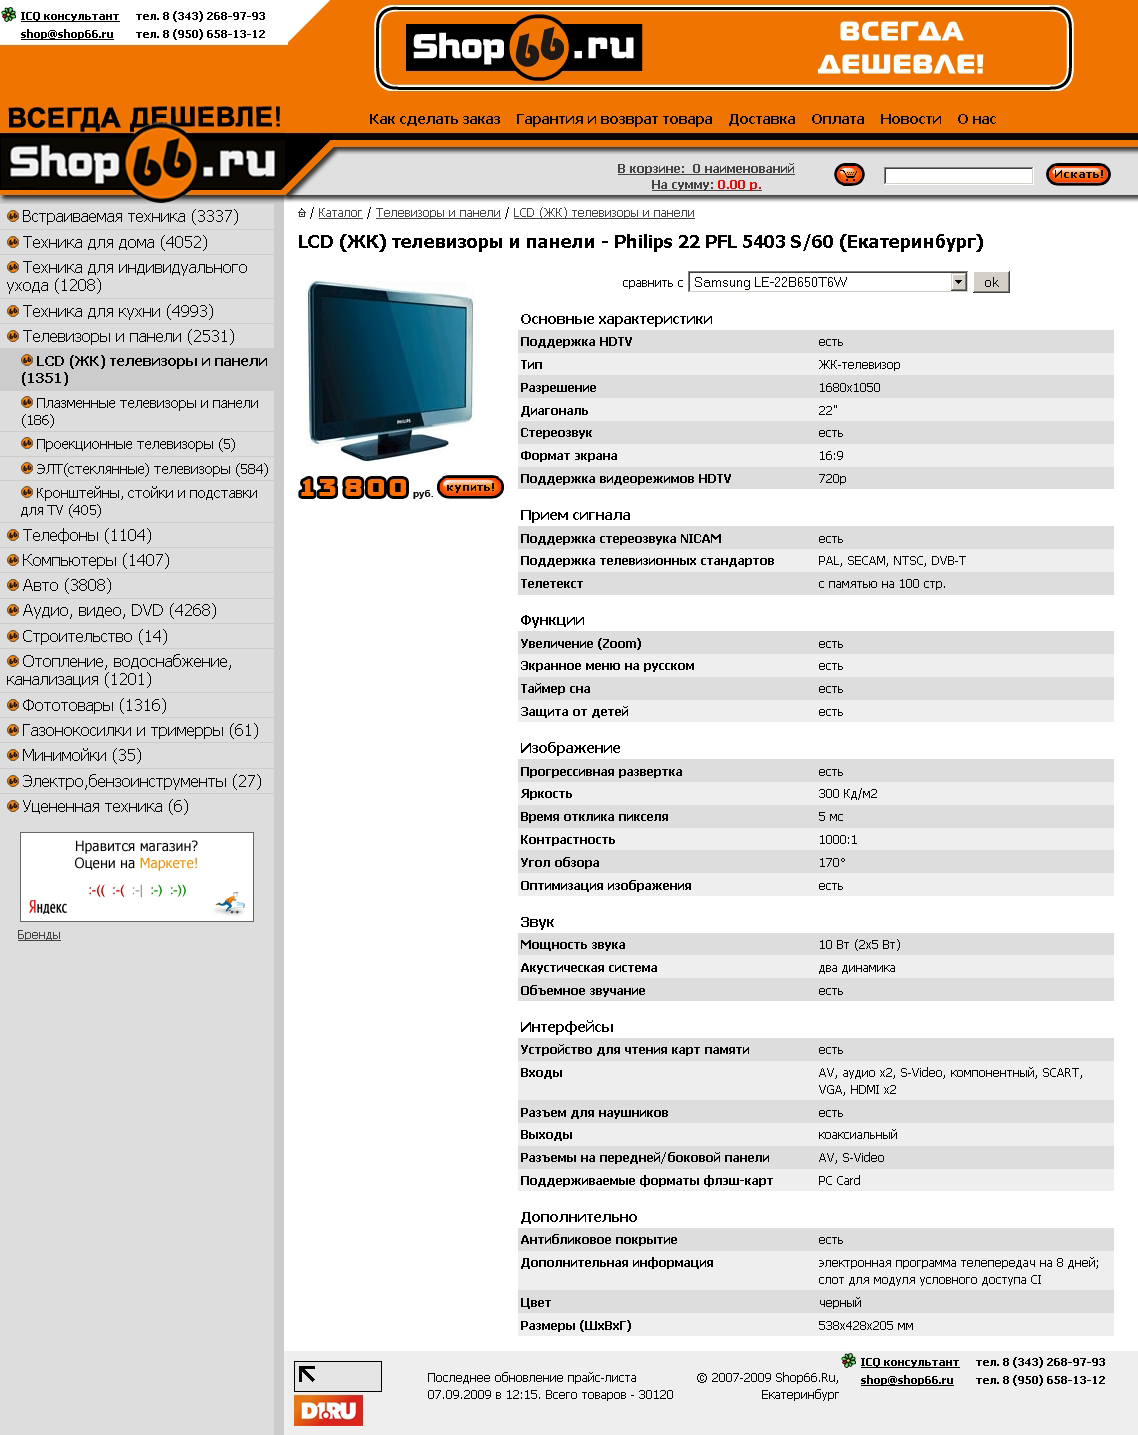 Интернет-магазин Shop66.ru.